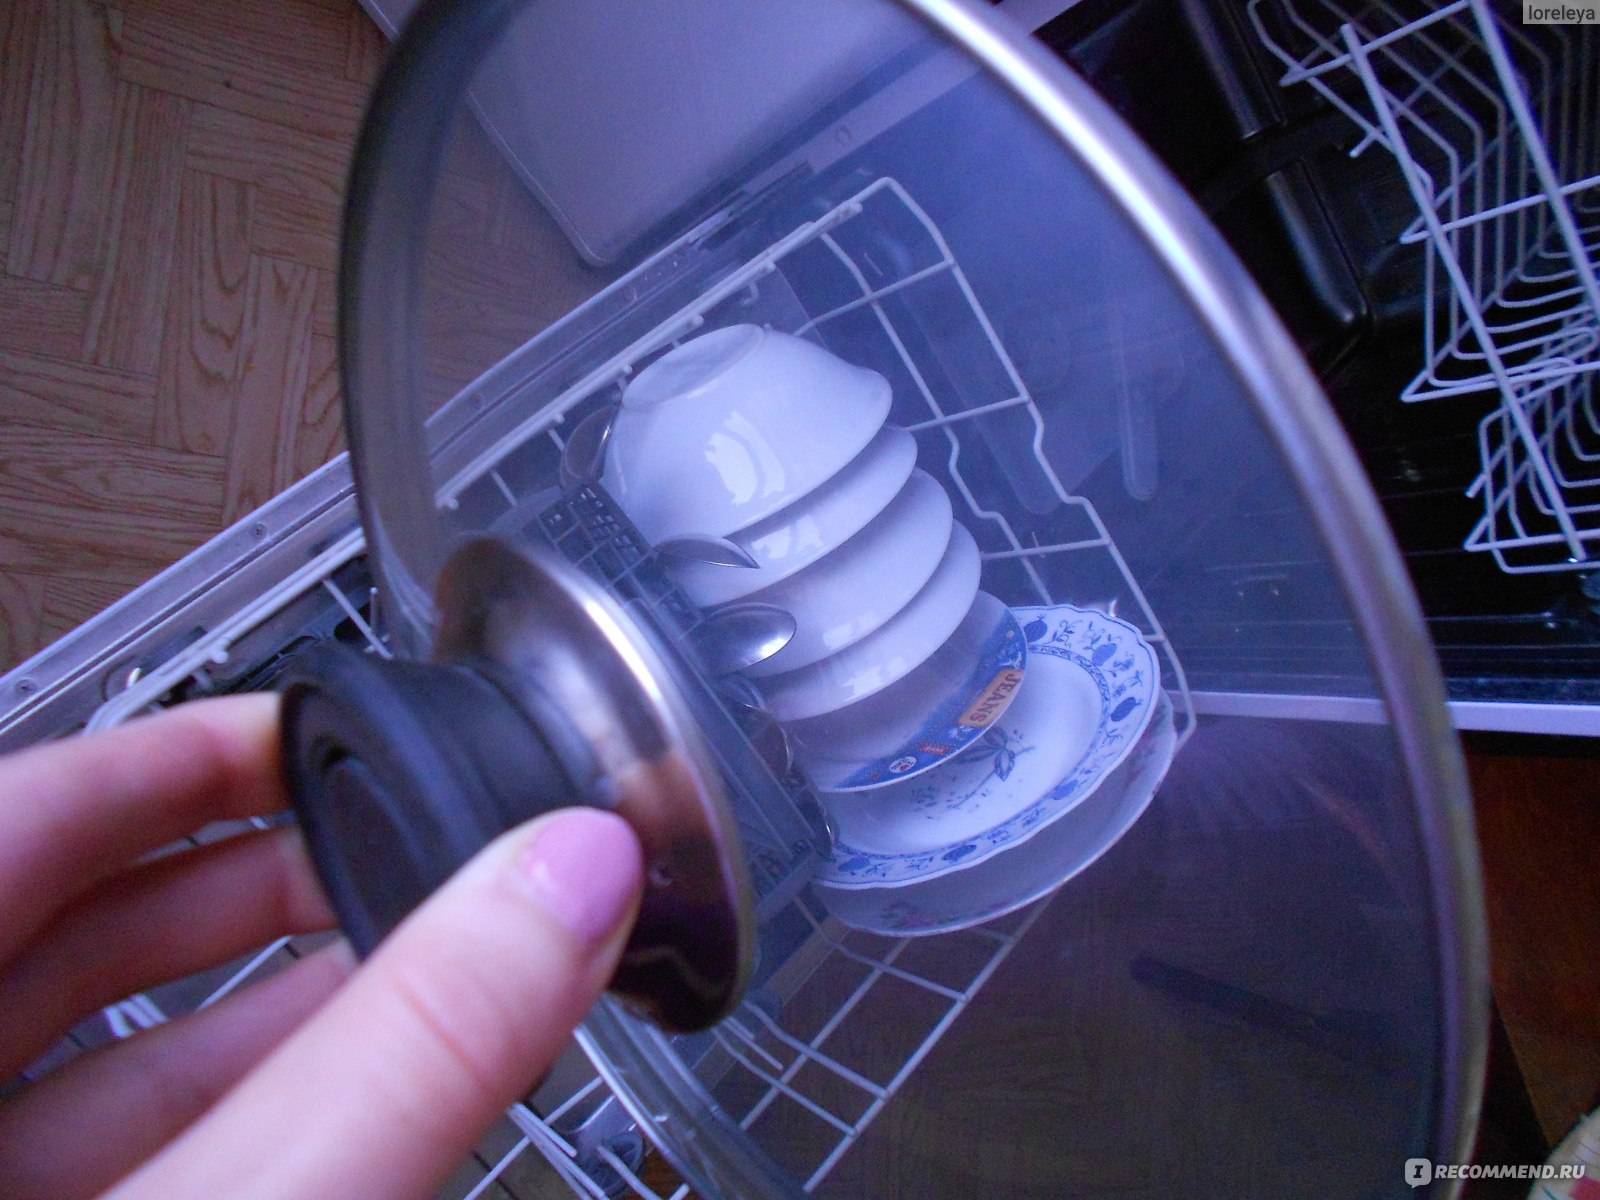 Как избавиться от налета на посуде